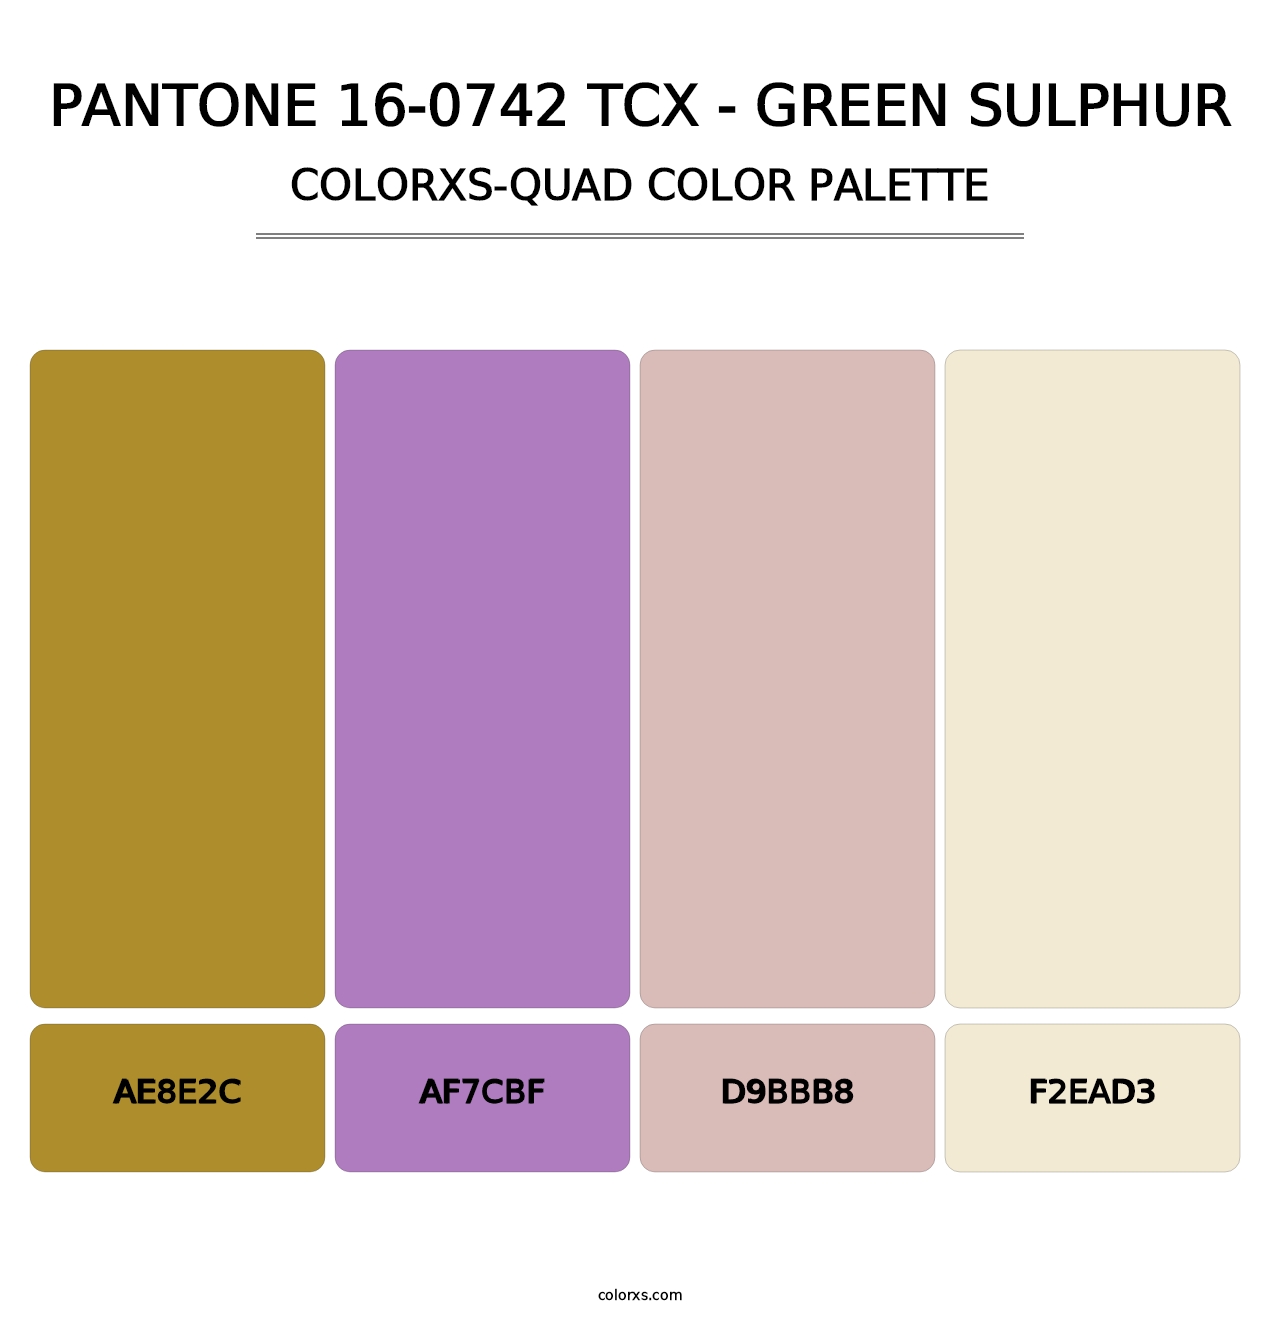 PANTONE 16-0742 TCX - Green Sulphur - Colorxs Quad Palette